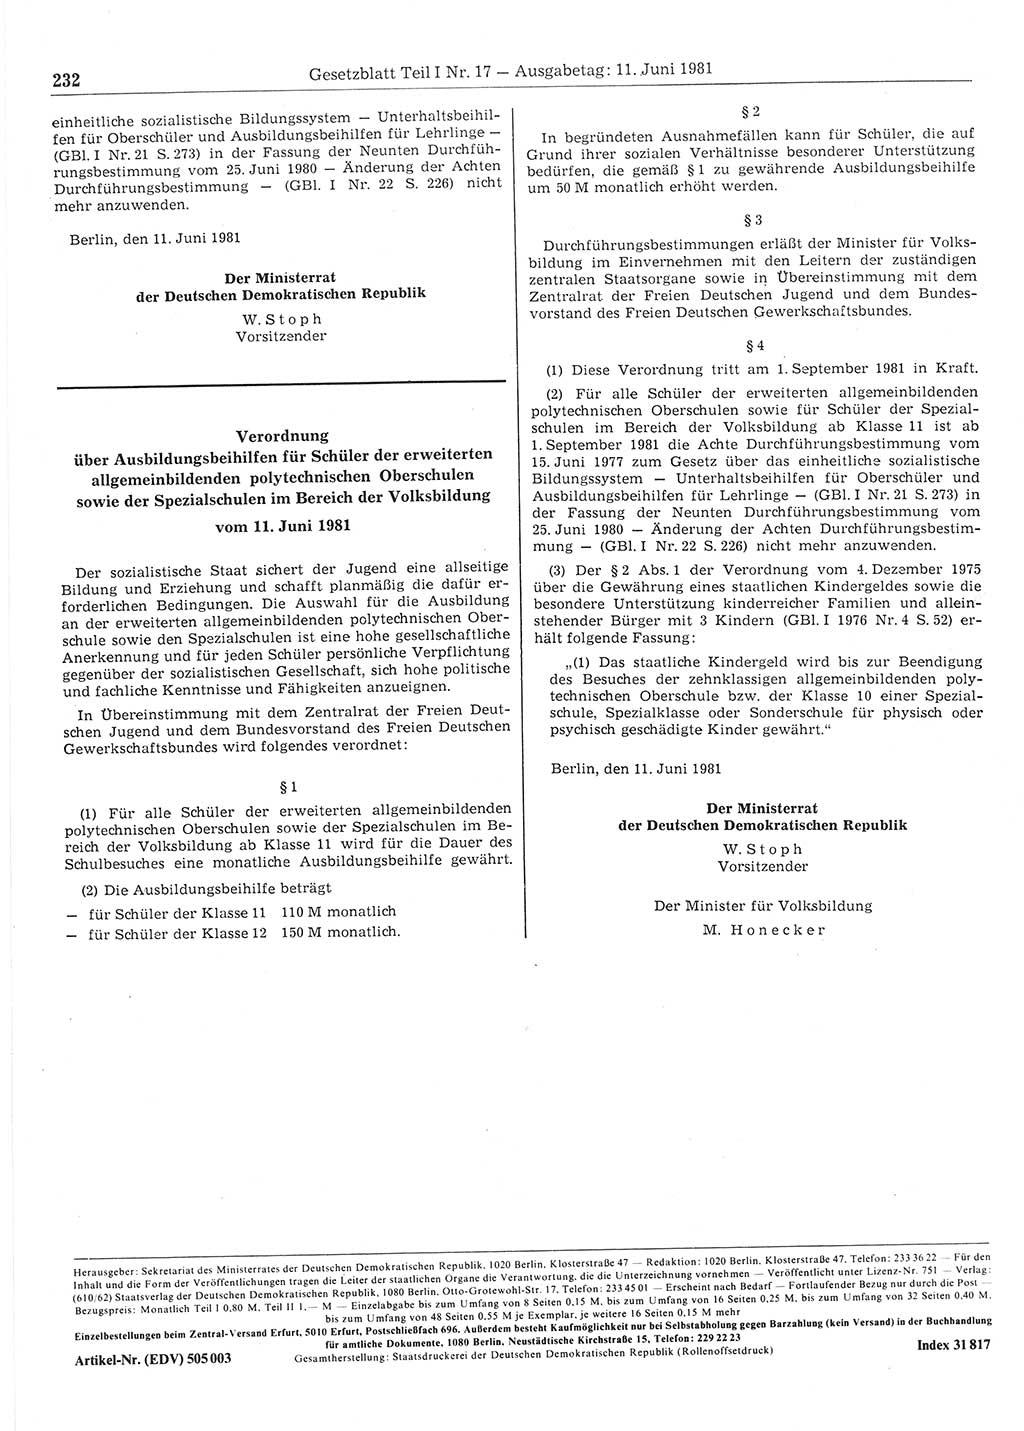 Gesetzblatt (GBl.) der Deutschen Demokratischen Republik (DDR) Teil Ⅰ 1981, Seite 232 (GBl. DDR Ⅰ 1981, S. 232)